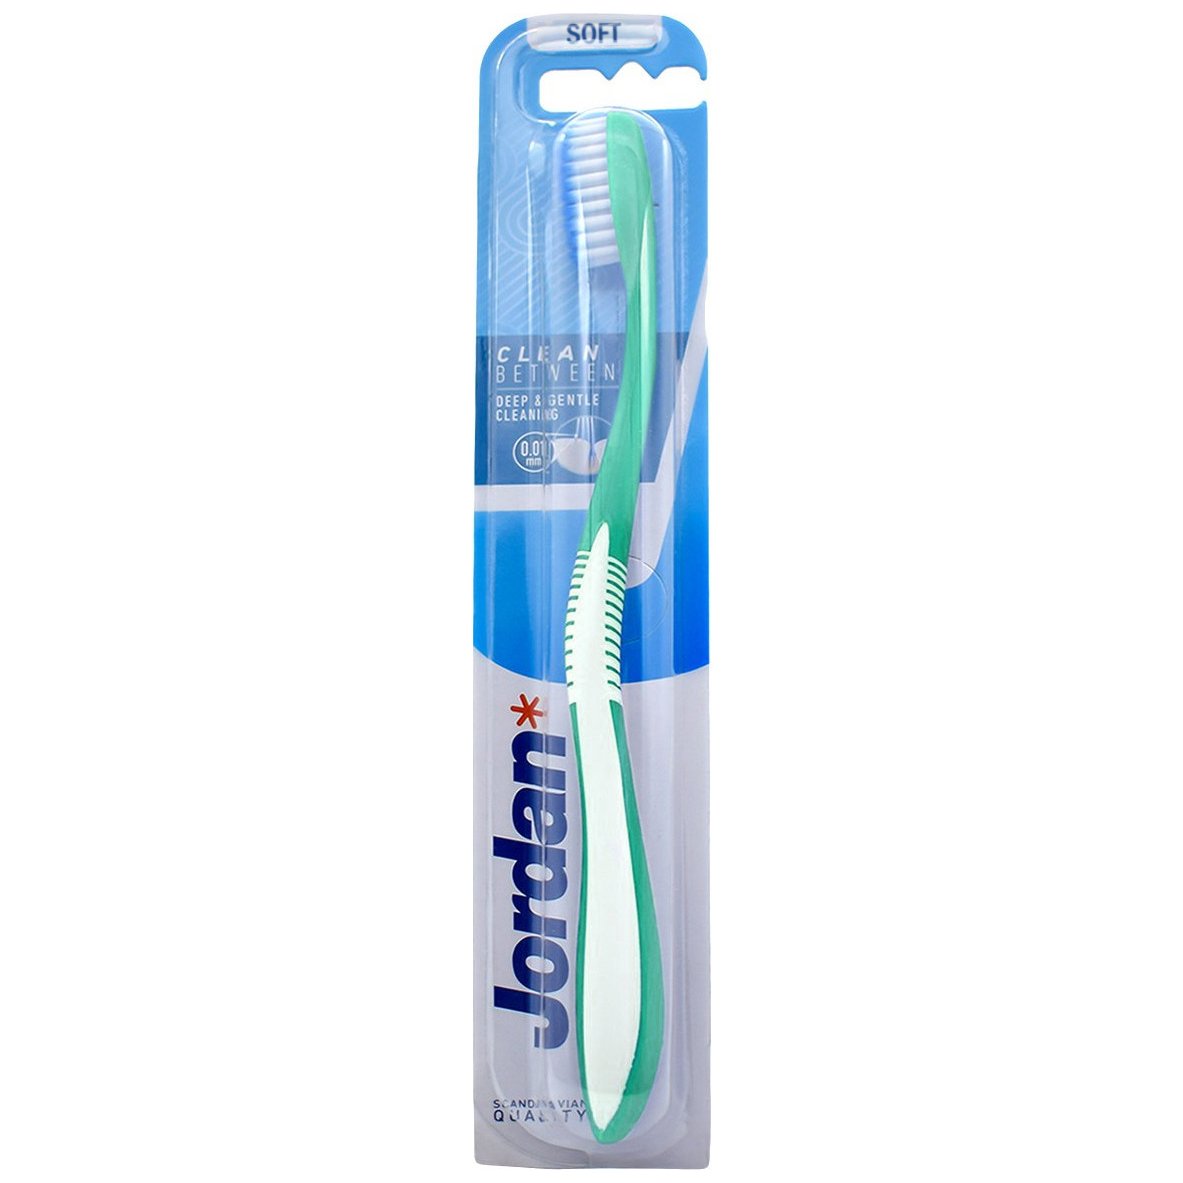 Jordan Clean Between Toothbrush Soft 0.01mm Μαλακή Οδοντόβουρτσα για Βαθύ Καθαρισμό με Εξαιρετικά Λεπτές Ίνες 1 Τεμάχιο, Κωδ 310036 – Τιρκουάζ